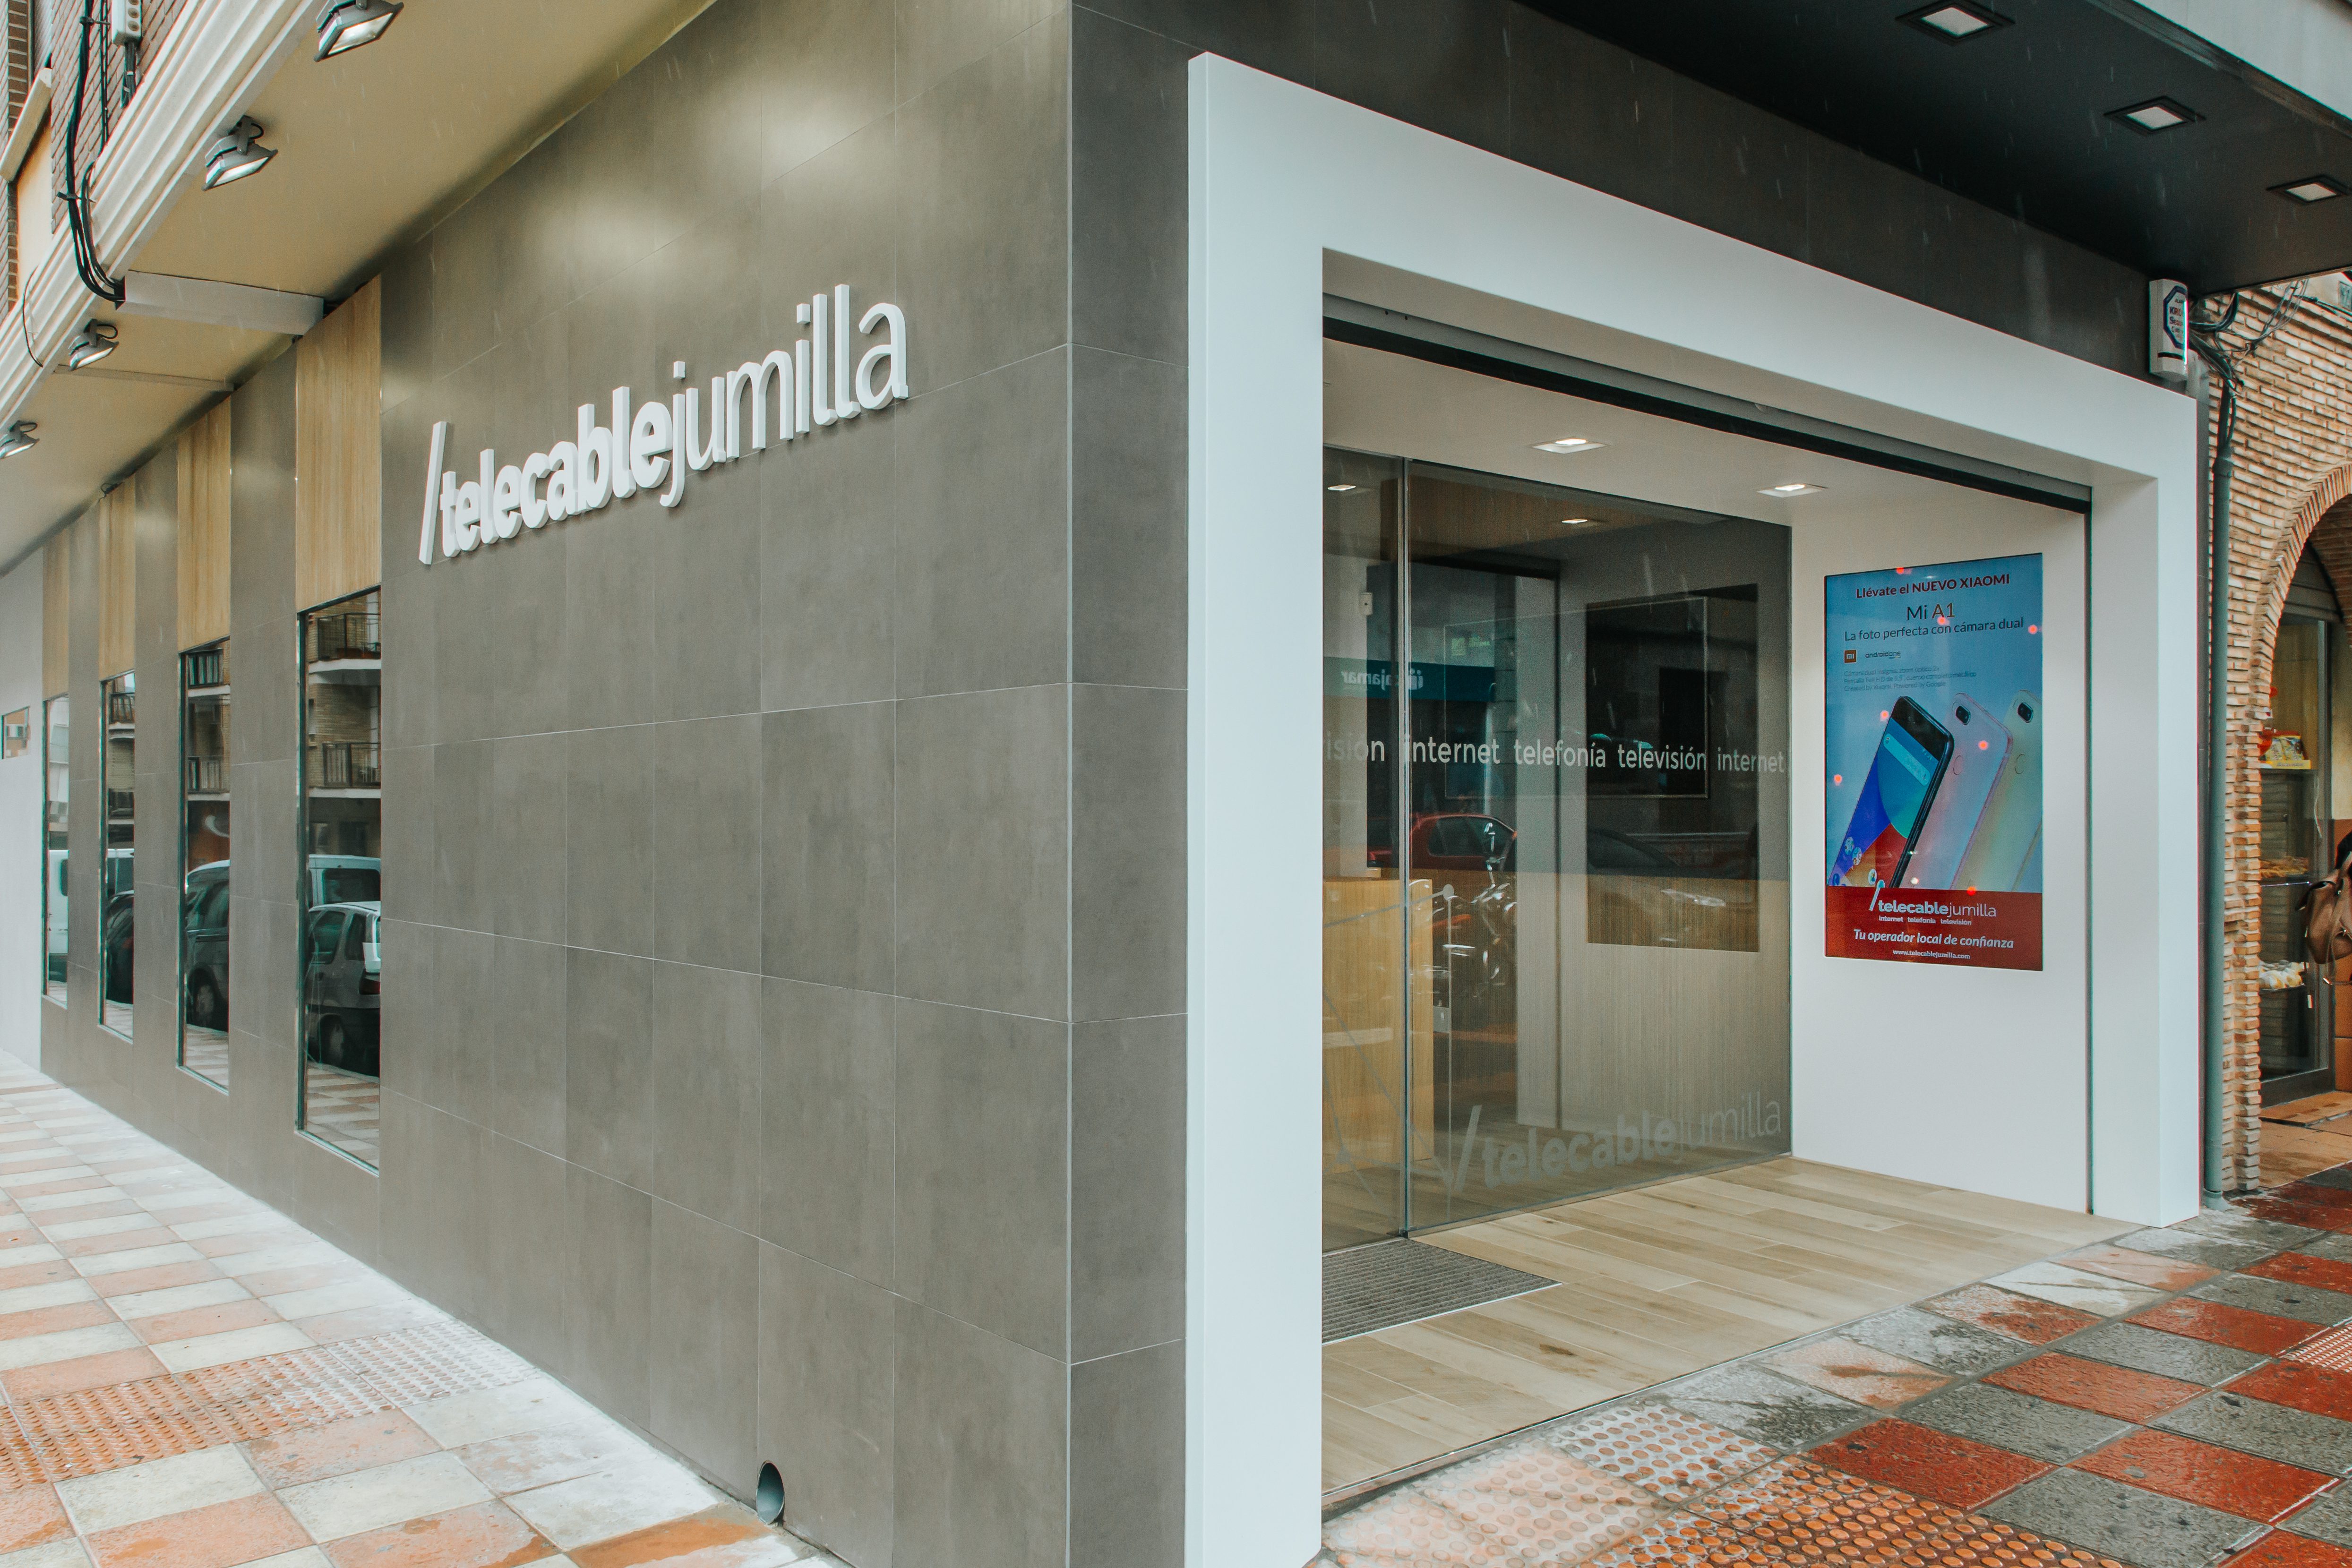 TeleCable atiende ya al público en su nueva oficina de Cánovas del Castillo, 92 esquina con Juan XXII